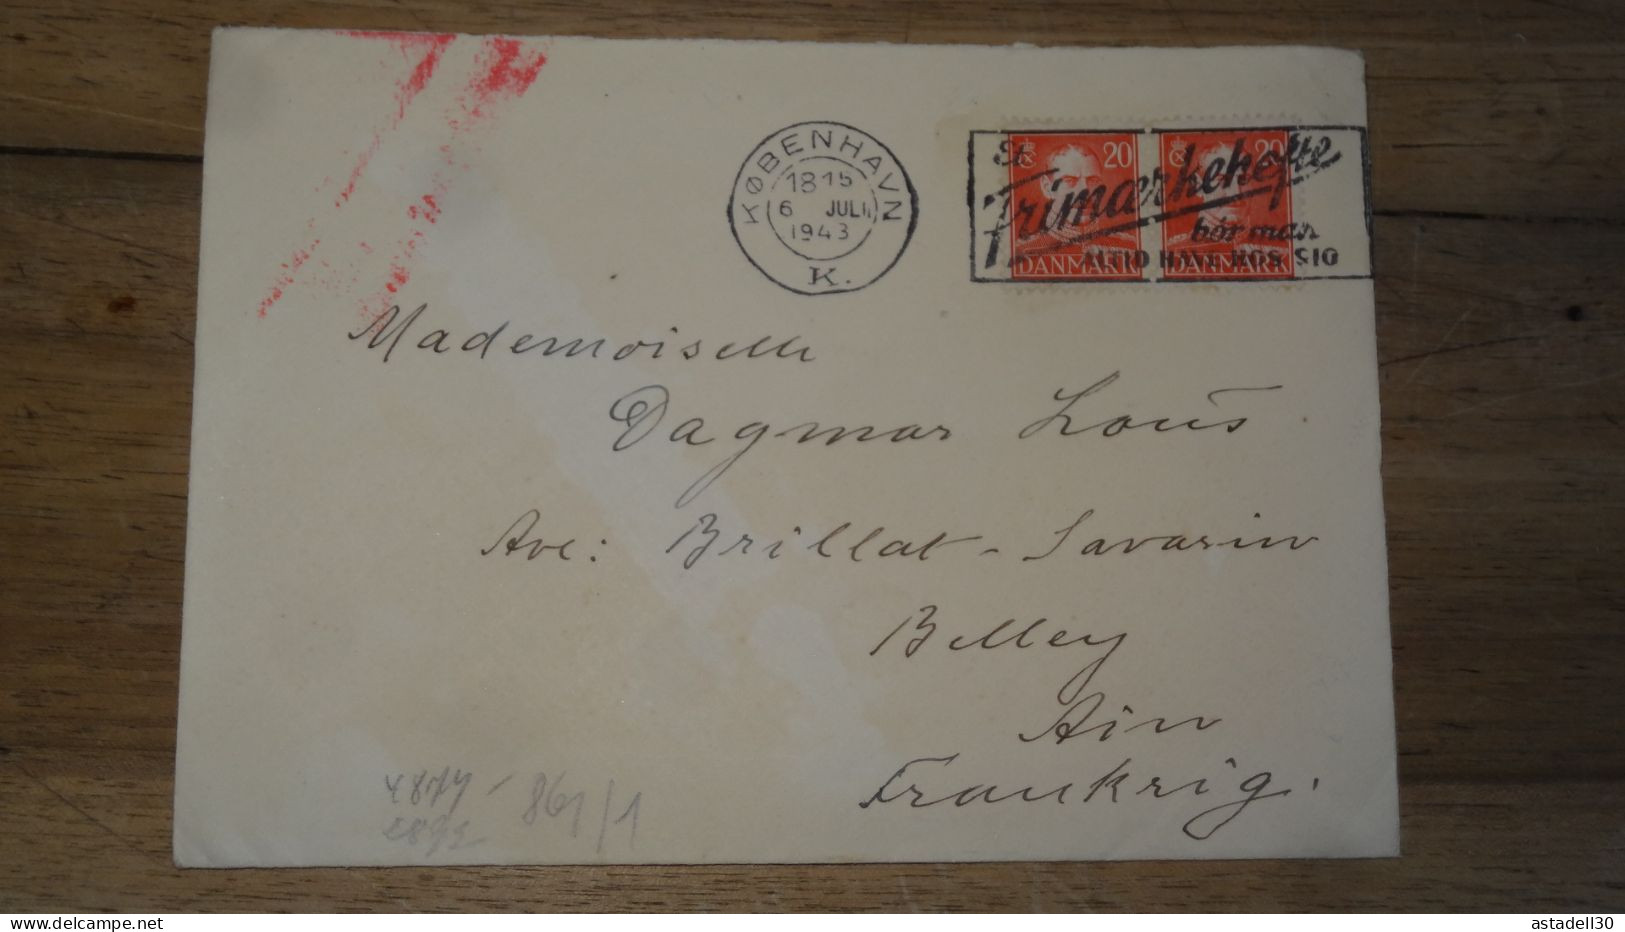 Enveloppe DANEMARK, Kobenhavn, Cenored To France - 1943   ......... Boite1 ...... 240424-83 - Lettres & Documents